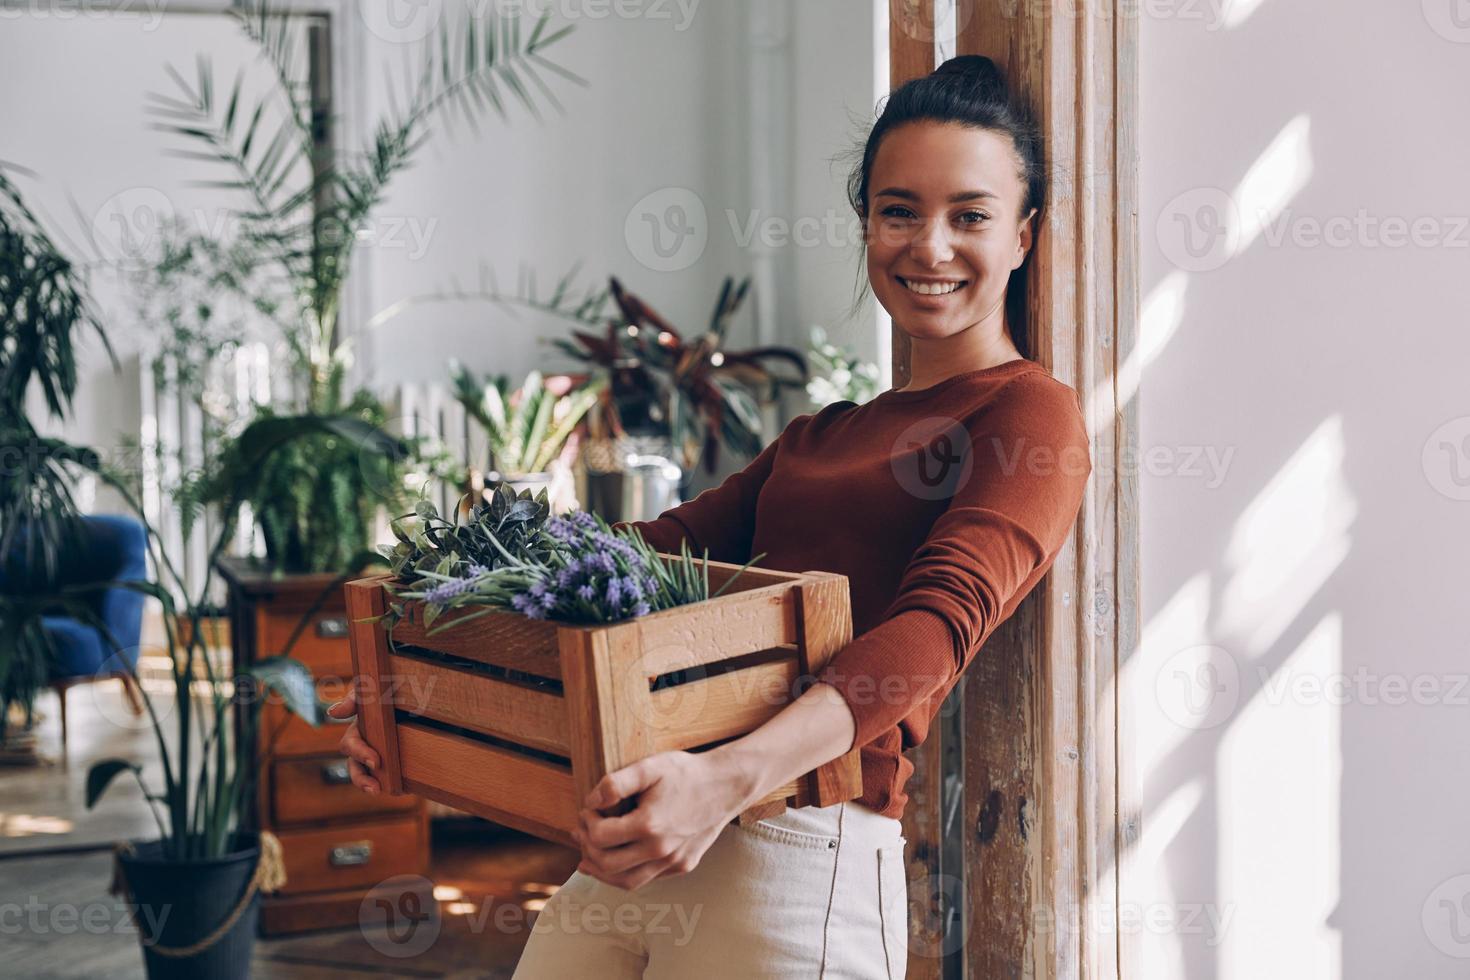 jovem alegre carregando caixa de madeira com plantas enquanto se inclinava na porta em casa foto